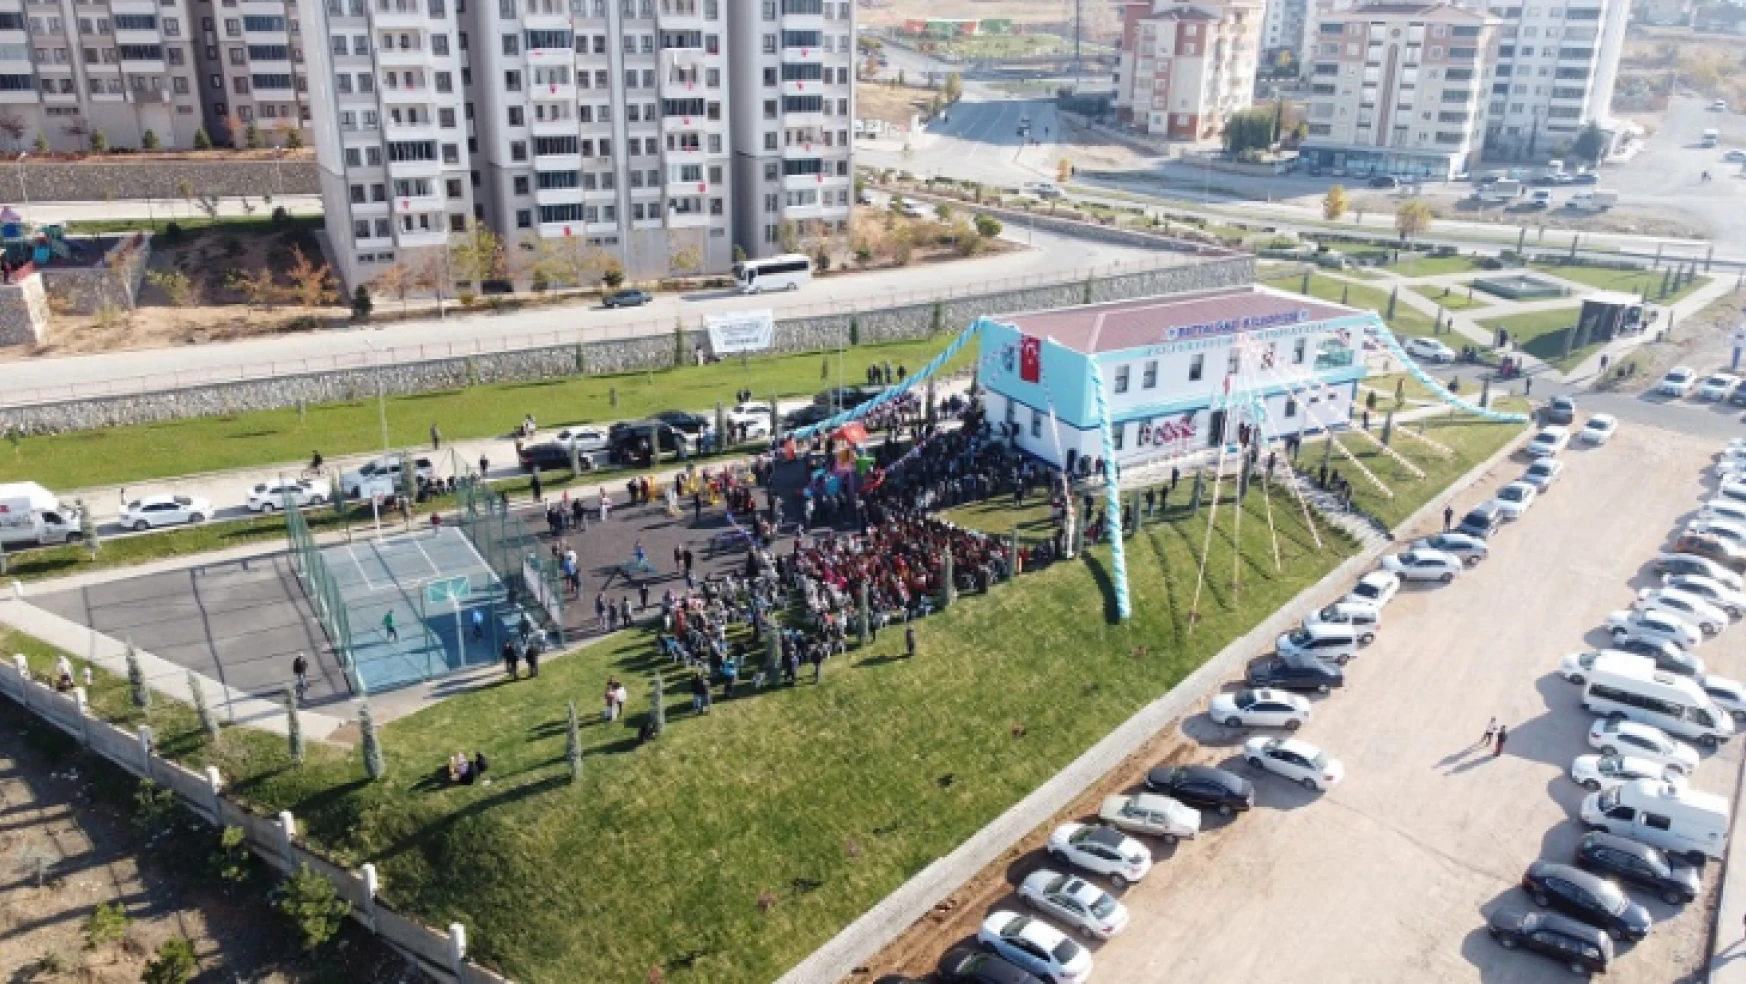 Ahmet Kekeç Semt Kütüphanesi Yoğun Katılımla Açıldı